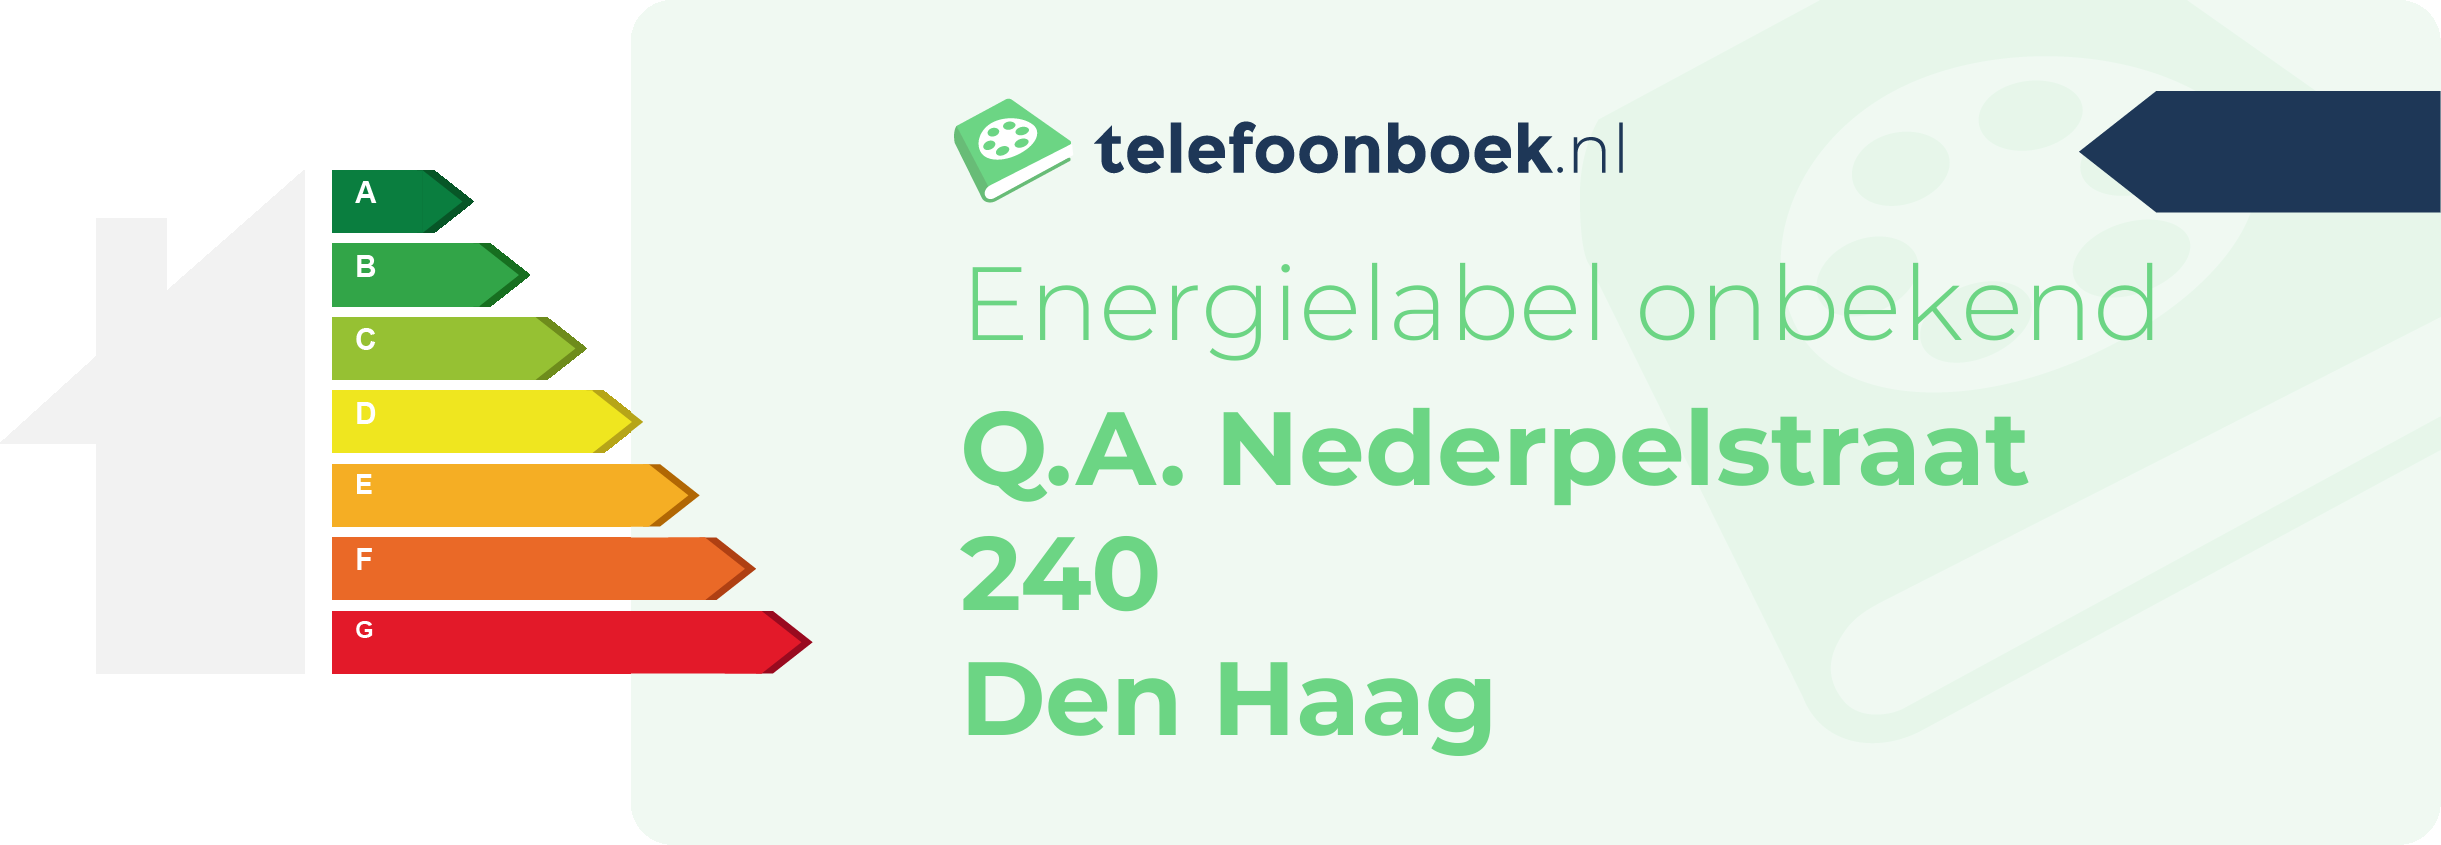 Energielabel Q.A. Nederpelstraat 240 Den Haag